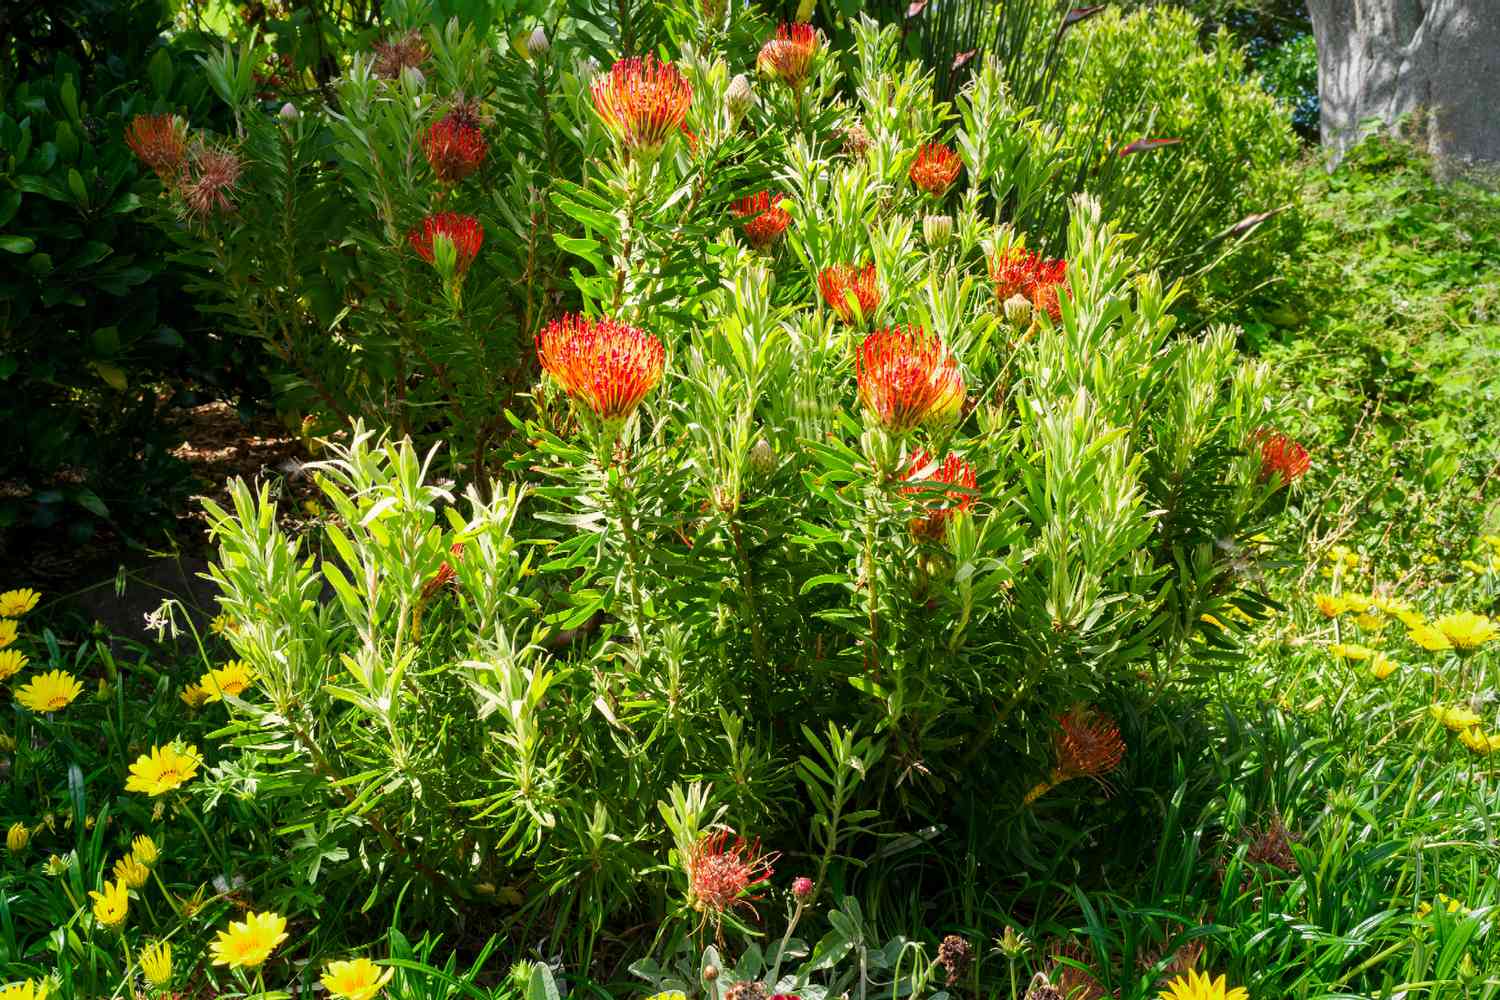 Protea-Pflanzenstängel mit roten, stacheligen Hochblättern